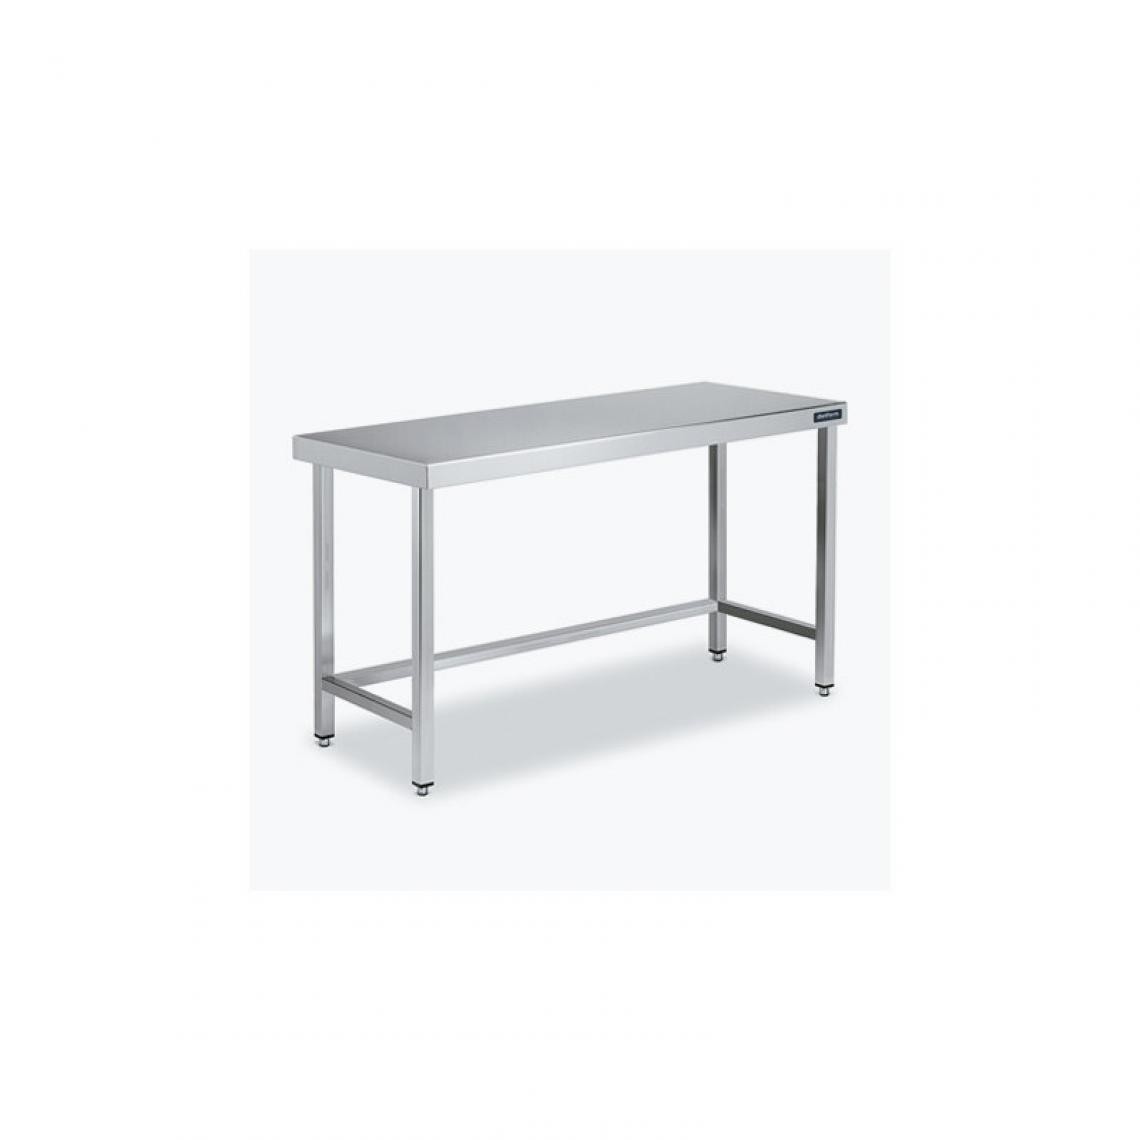 DISTFORM - Table Centrale 600x600X600 avec Renforts - Distform - Inox 18/101100x600x600mm - Tables à manger